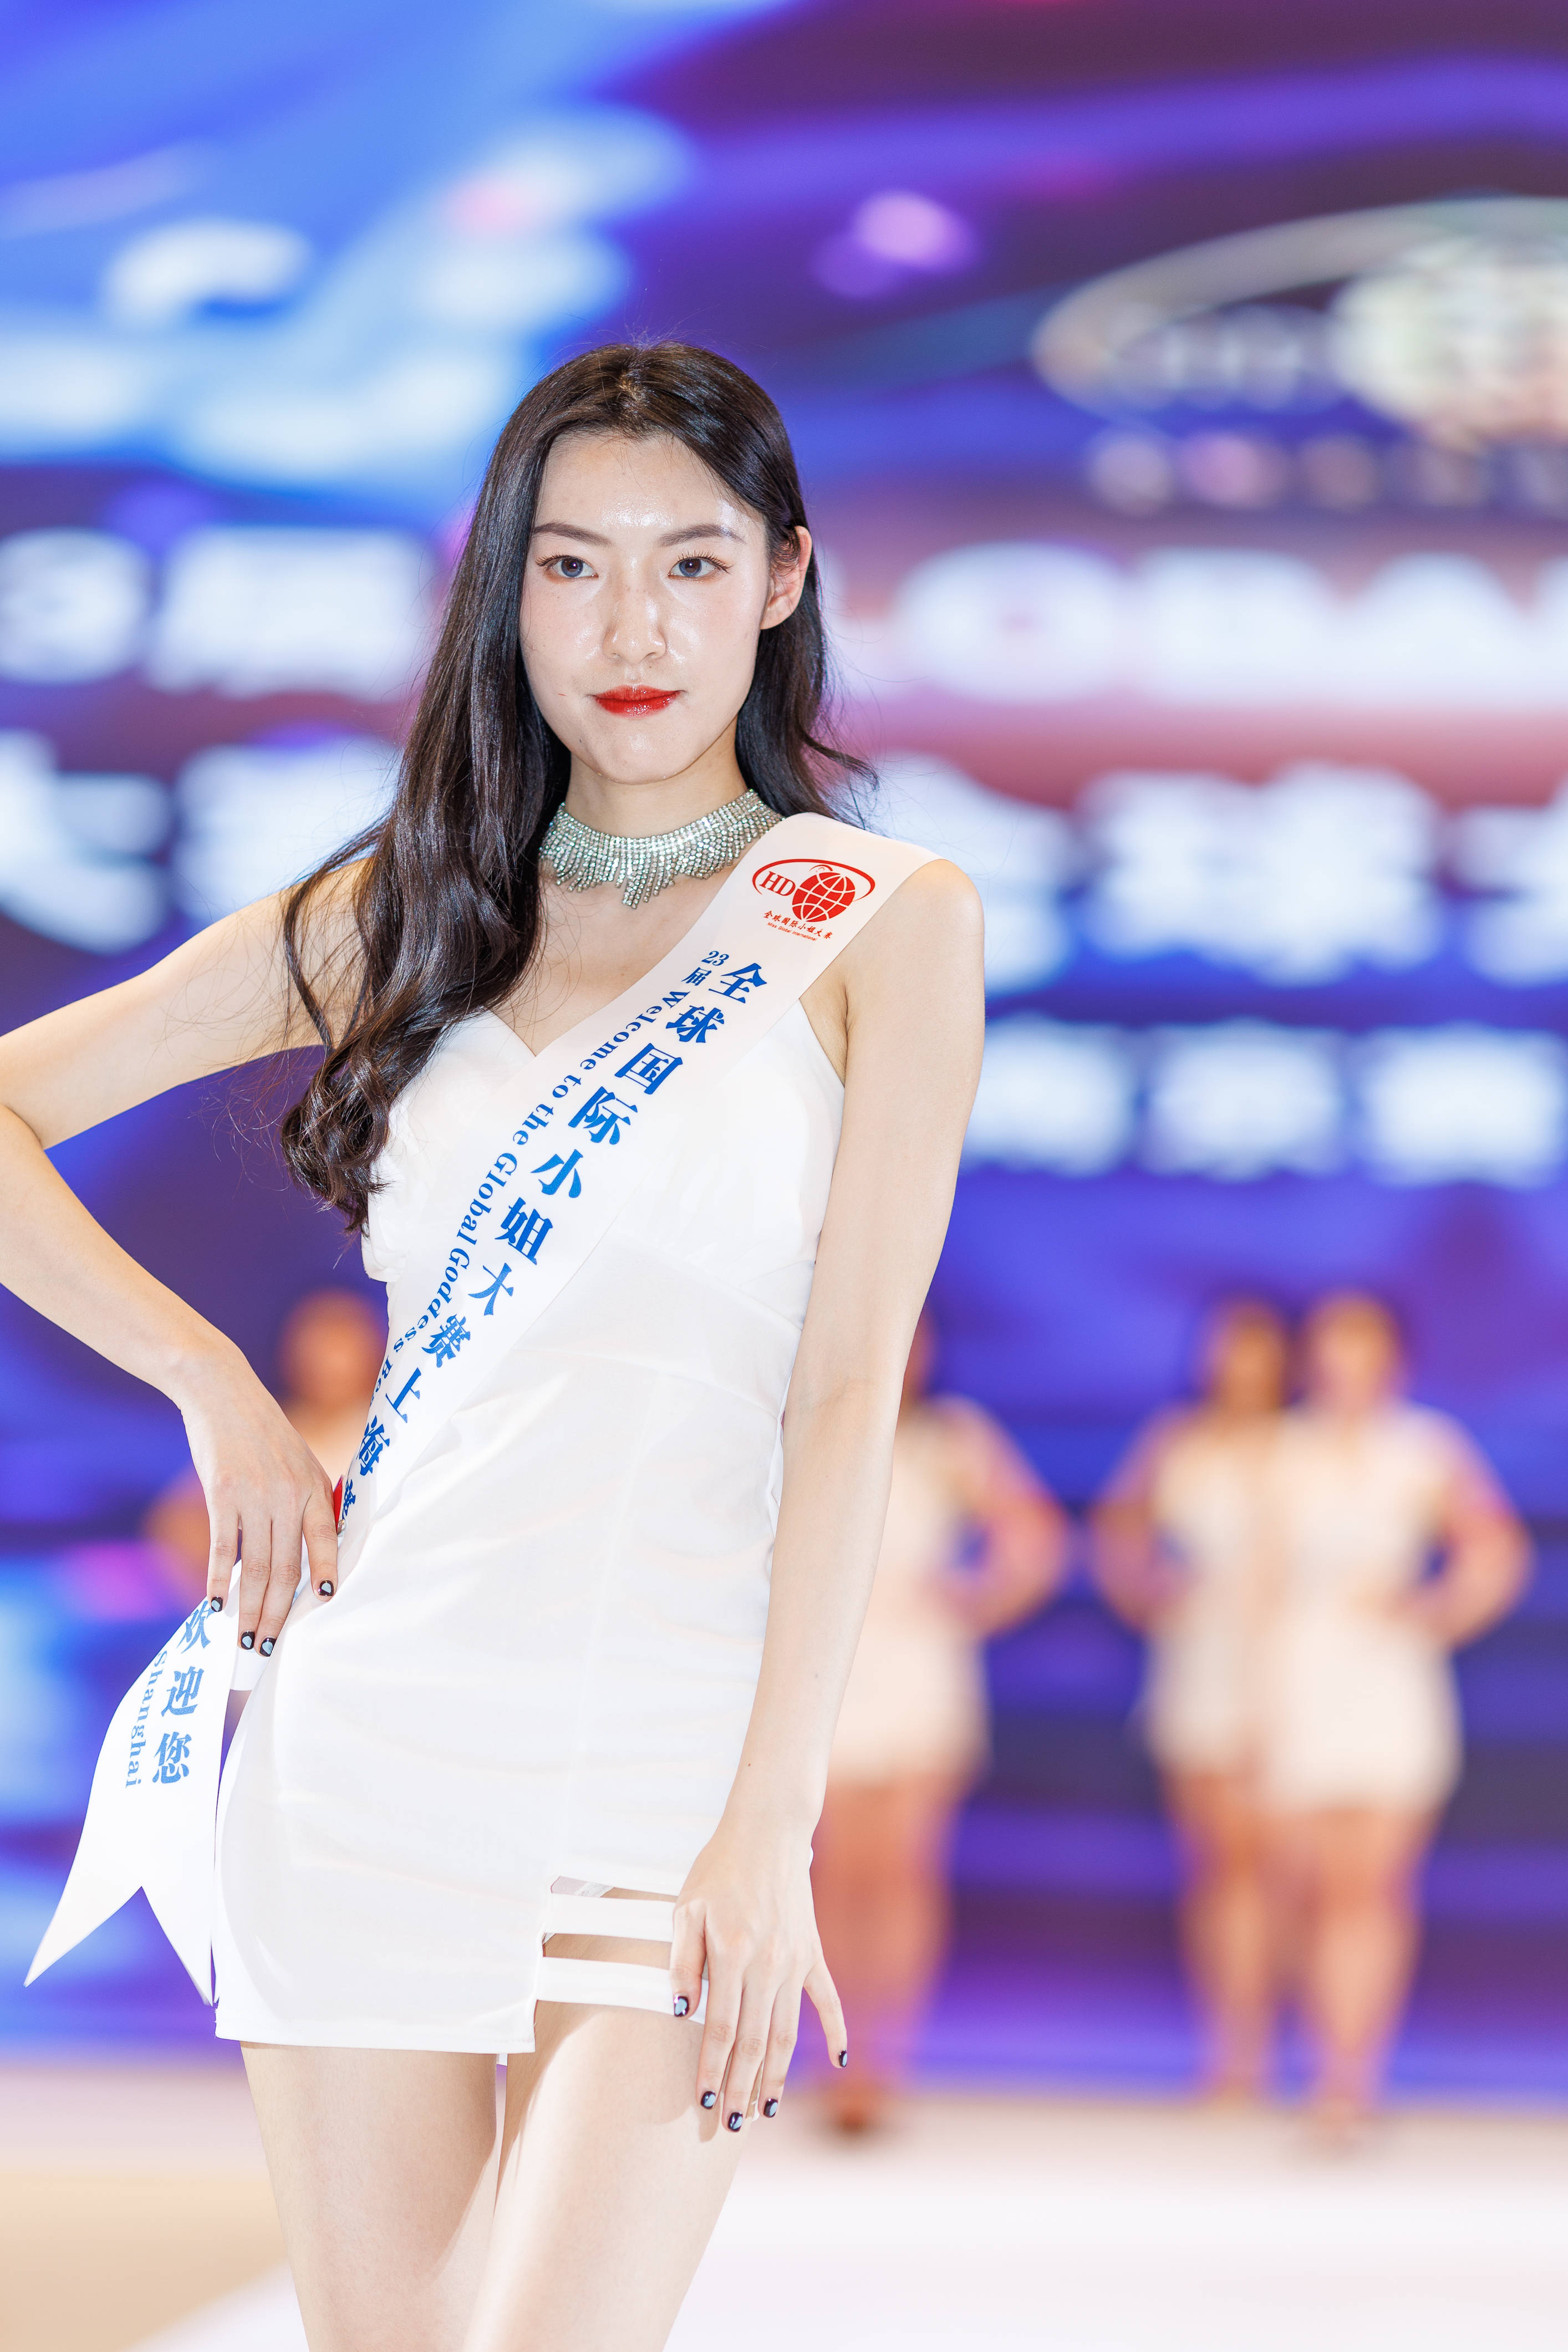 23届全球国际小姐大赛新闻发布会·上海,南京赛区晋级决赛在上海盛大